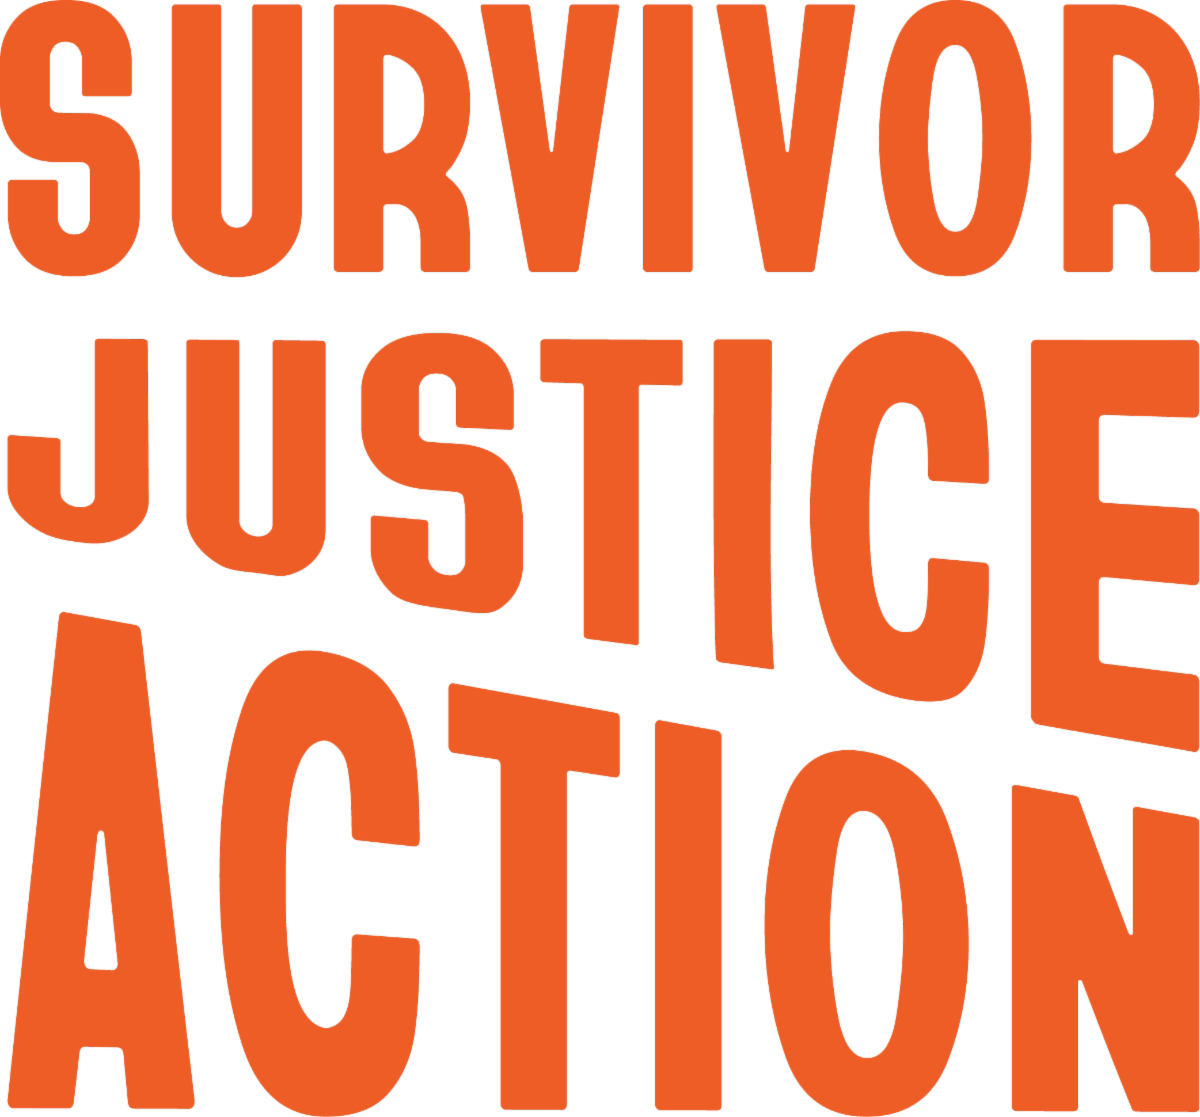 Survivor Justice Action